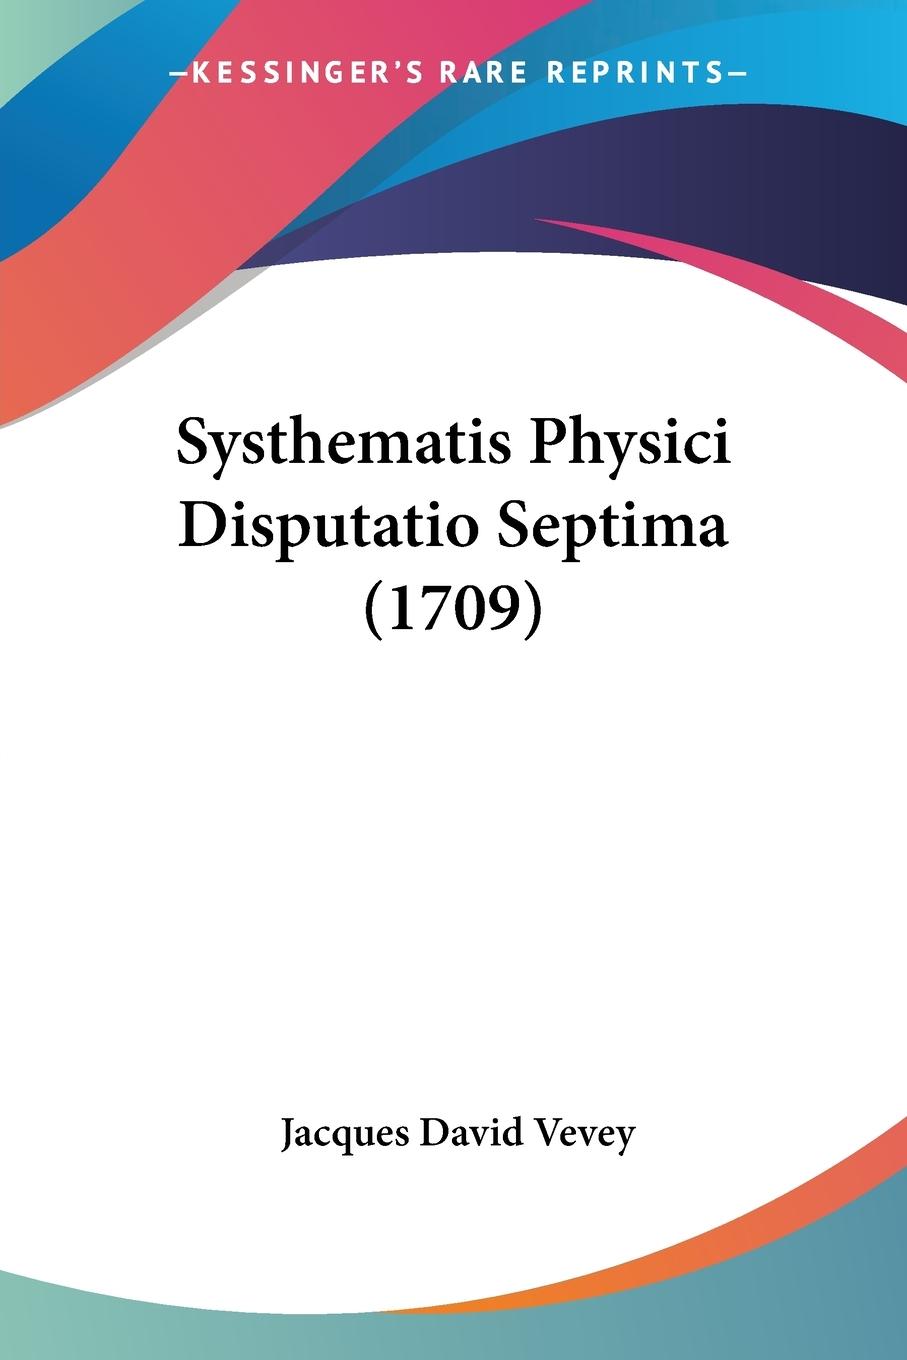 Systhematis Physici Disputatio Septima (1709) - Vevey, Jacques David